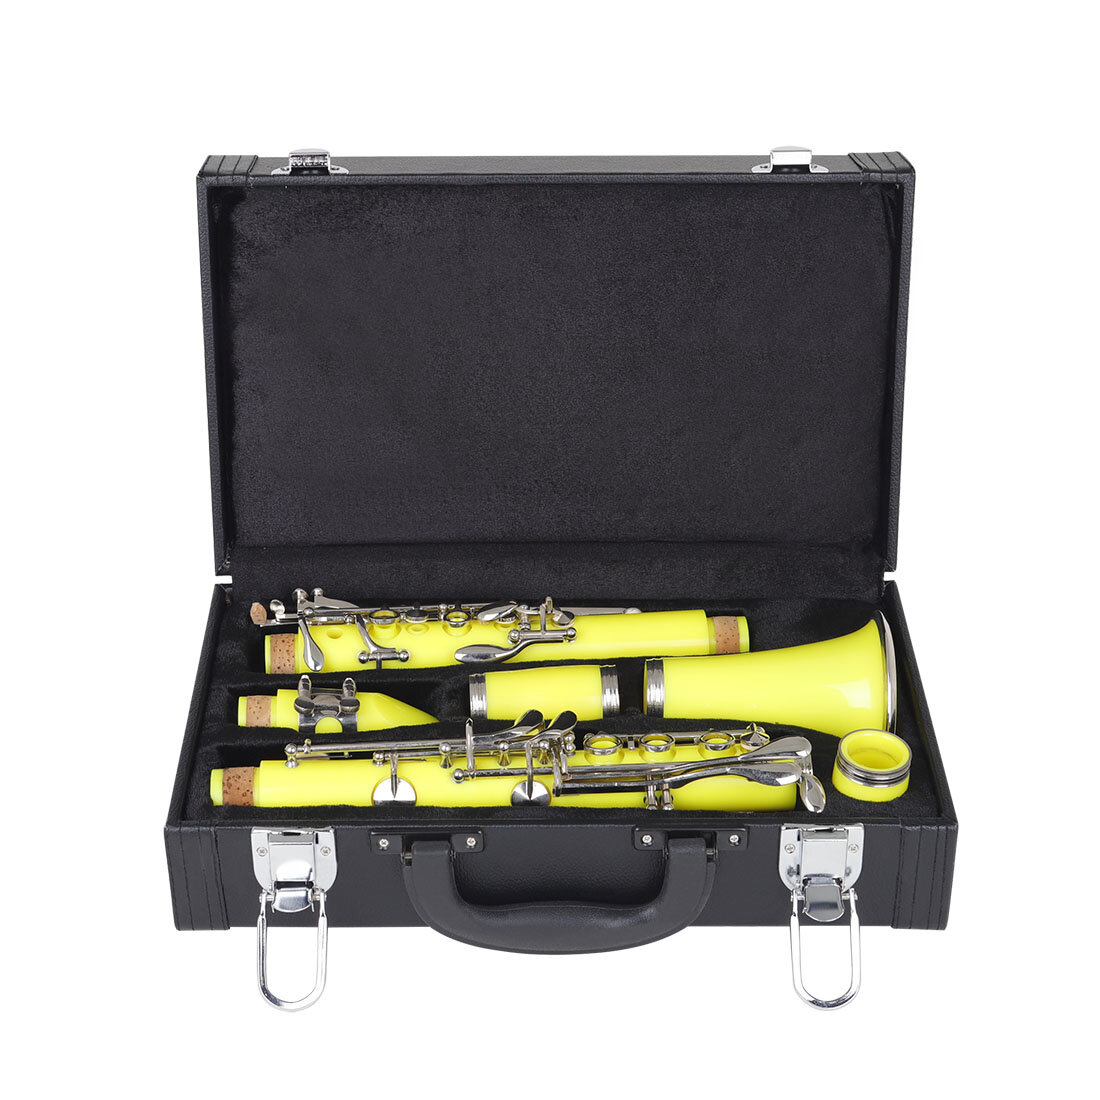 IN-125 Professionele schokbestendige opbergkoffer voor klarinetinstrumenten